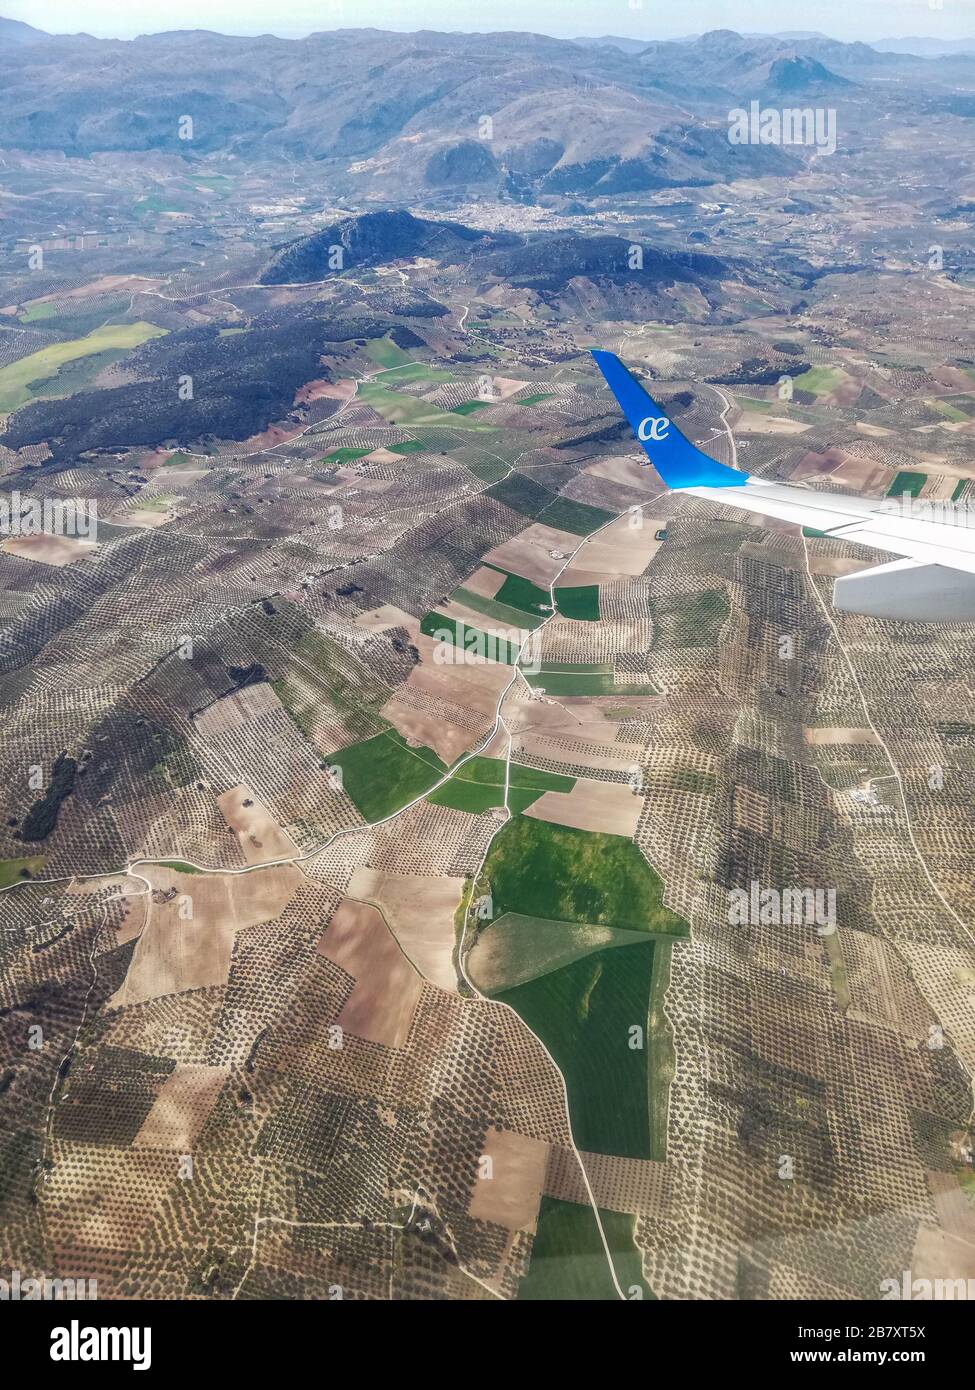 GRANADA, SPANIEN - 12. März 2020: Luftbild der Natur und der Straßen rund um die Stadt Granada, Spanien von einem Flugzeug der Firma Air Europa aus gesehen Stockfoto